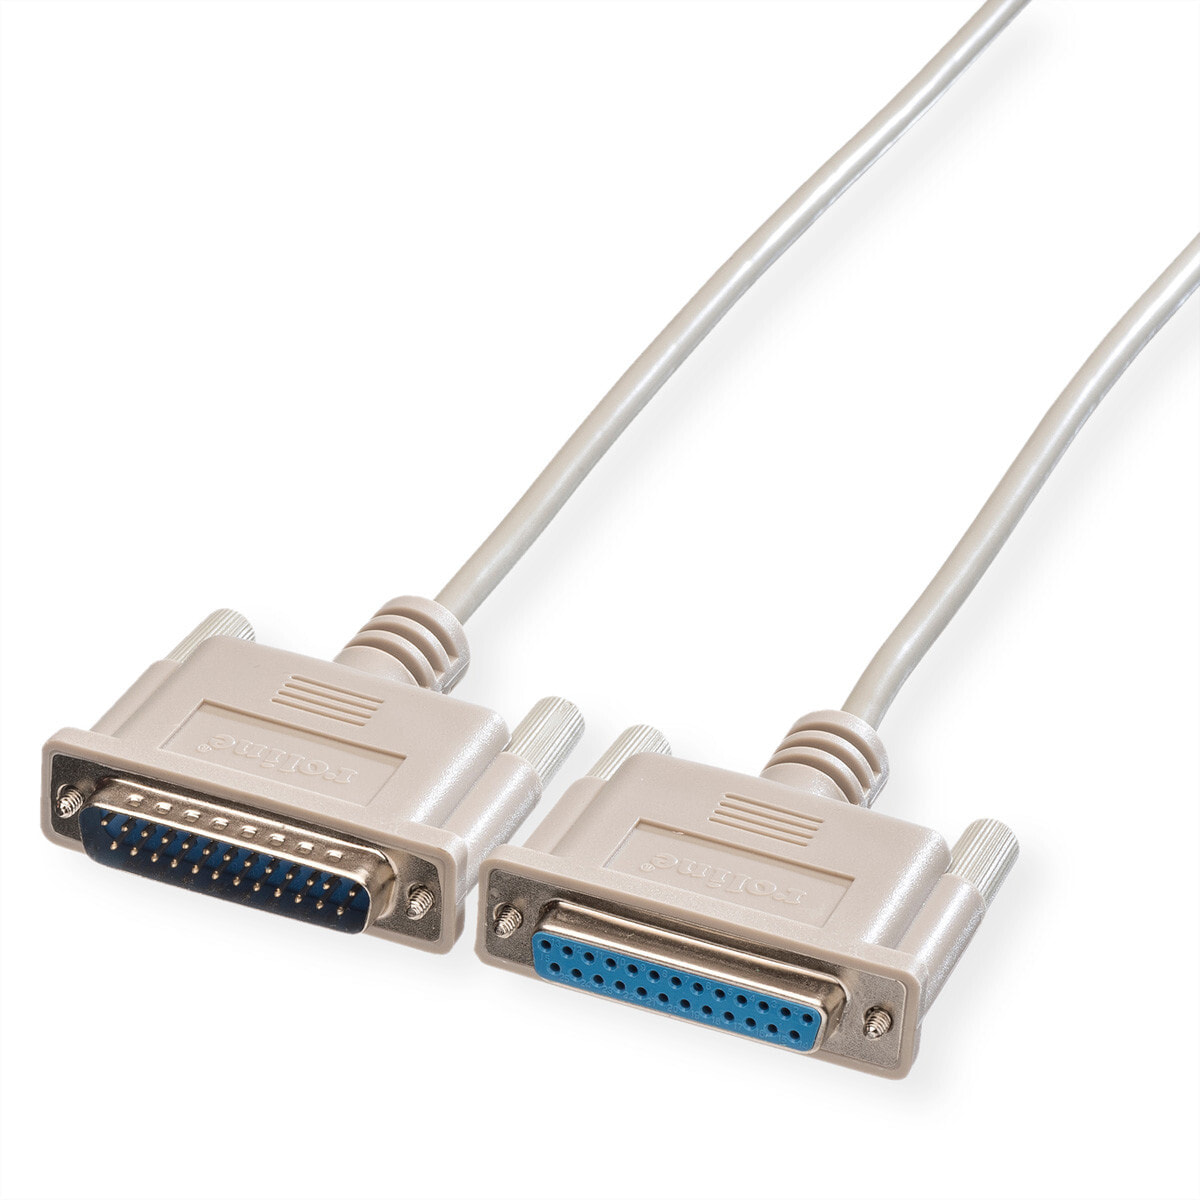 ROLINE RS232 Cable, M - F 1.8 m кабель последовательной связи 11.01.3618